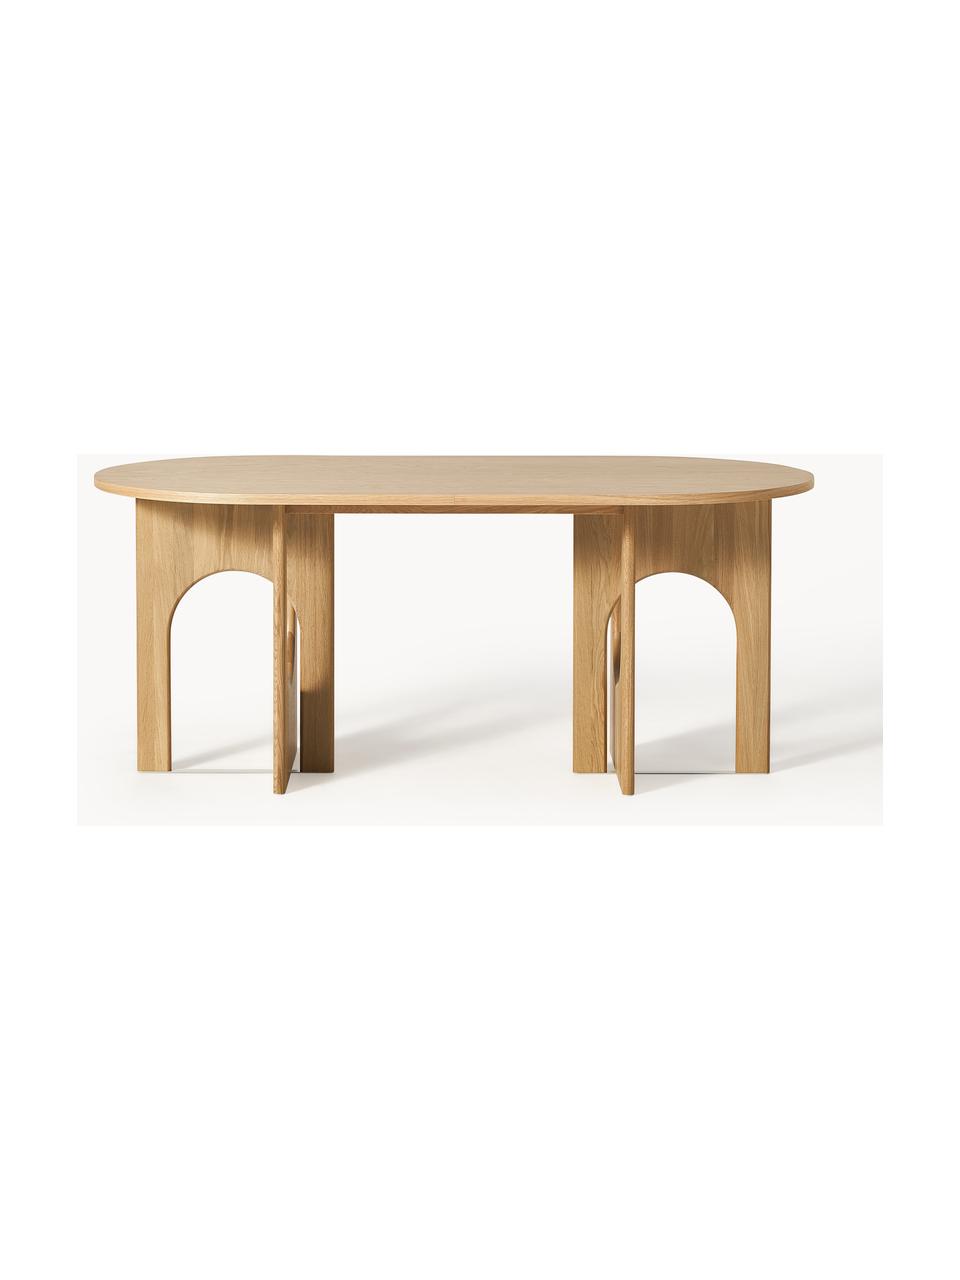 Owalny stół do jadalni Apollo, różne rozmiary, Blat: fornir z drewna dębowego , Nogi: drewno dębowe lakierowane, Drewno dębowe, S 180 x G 90 cm